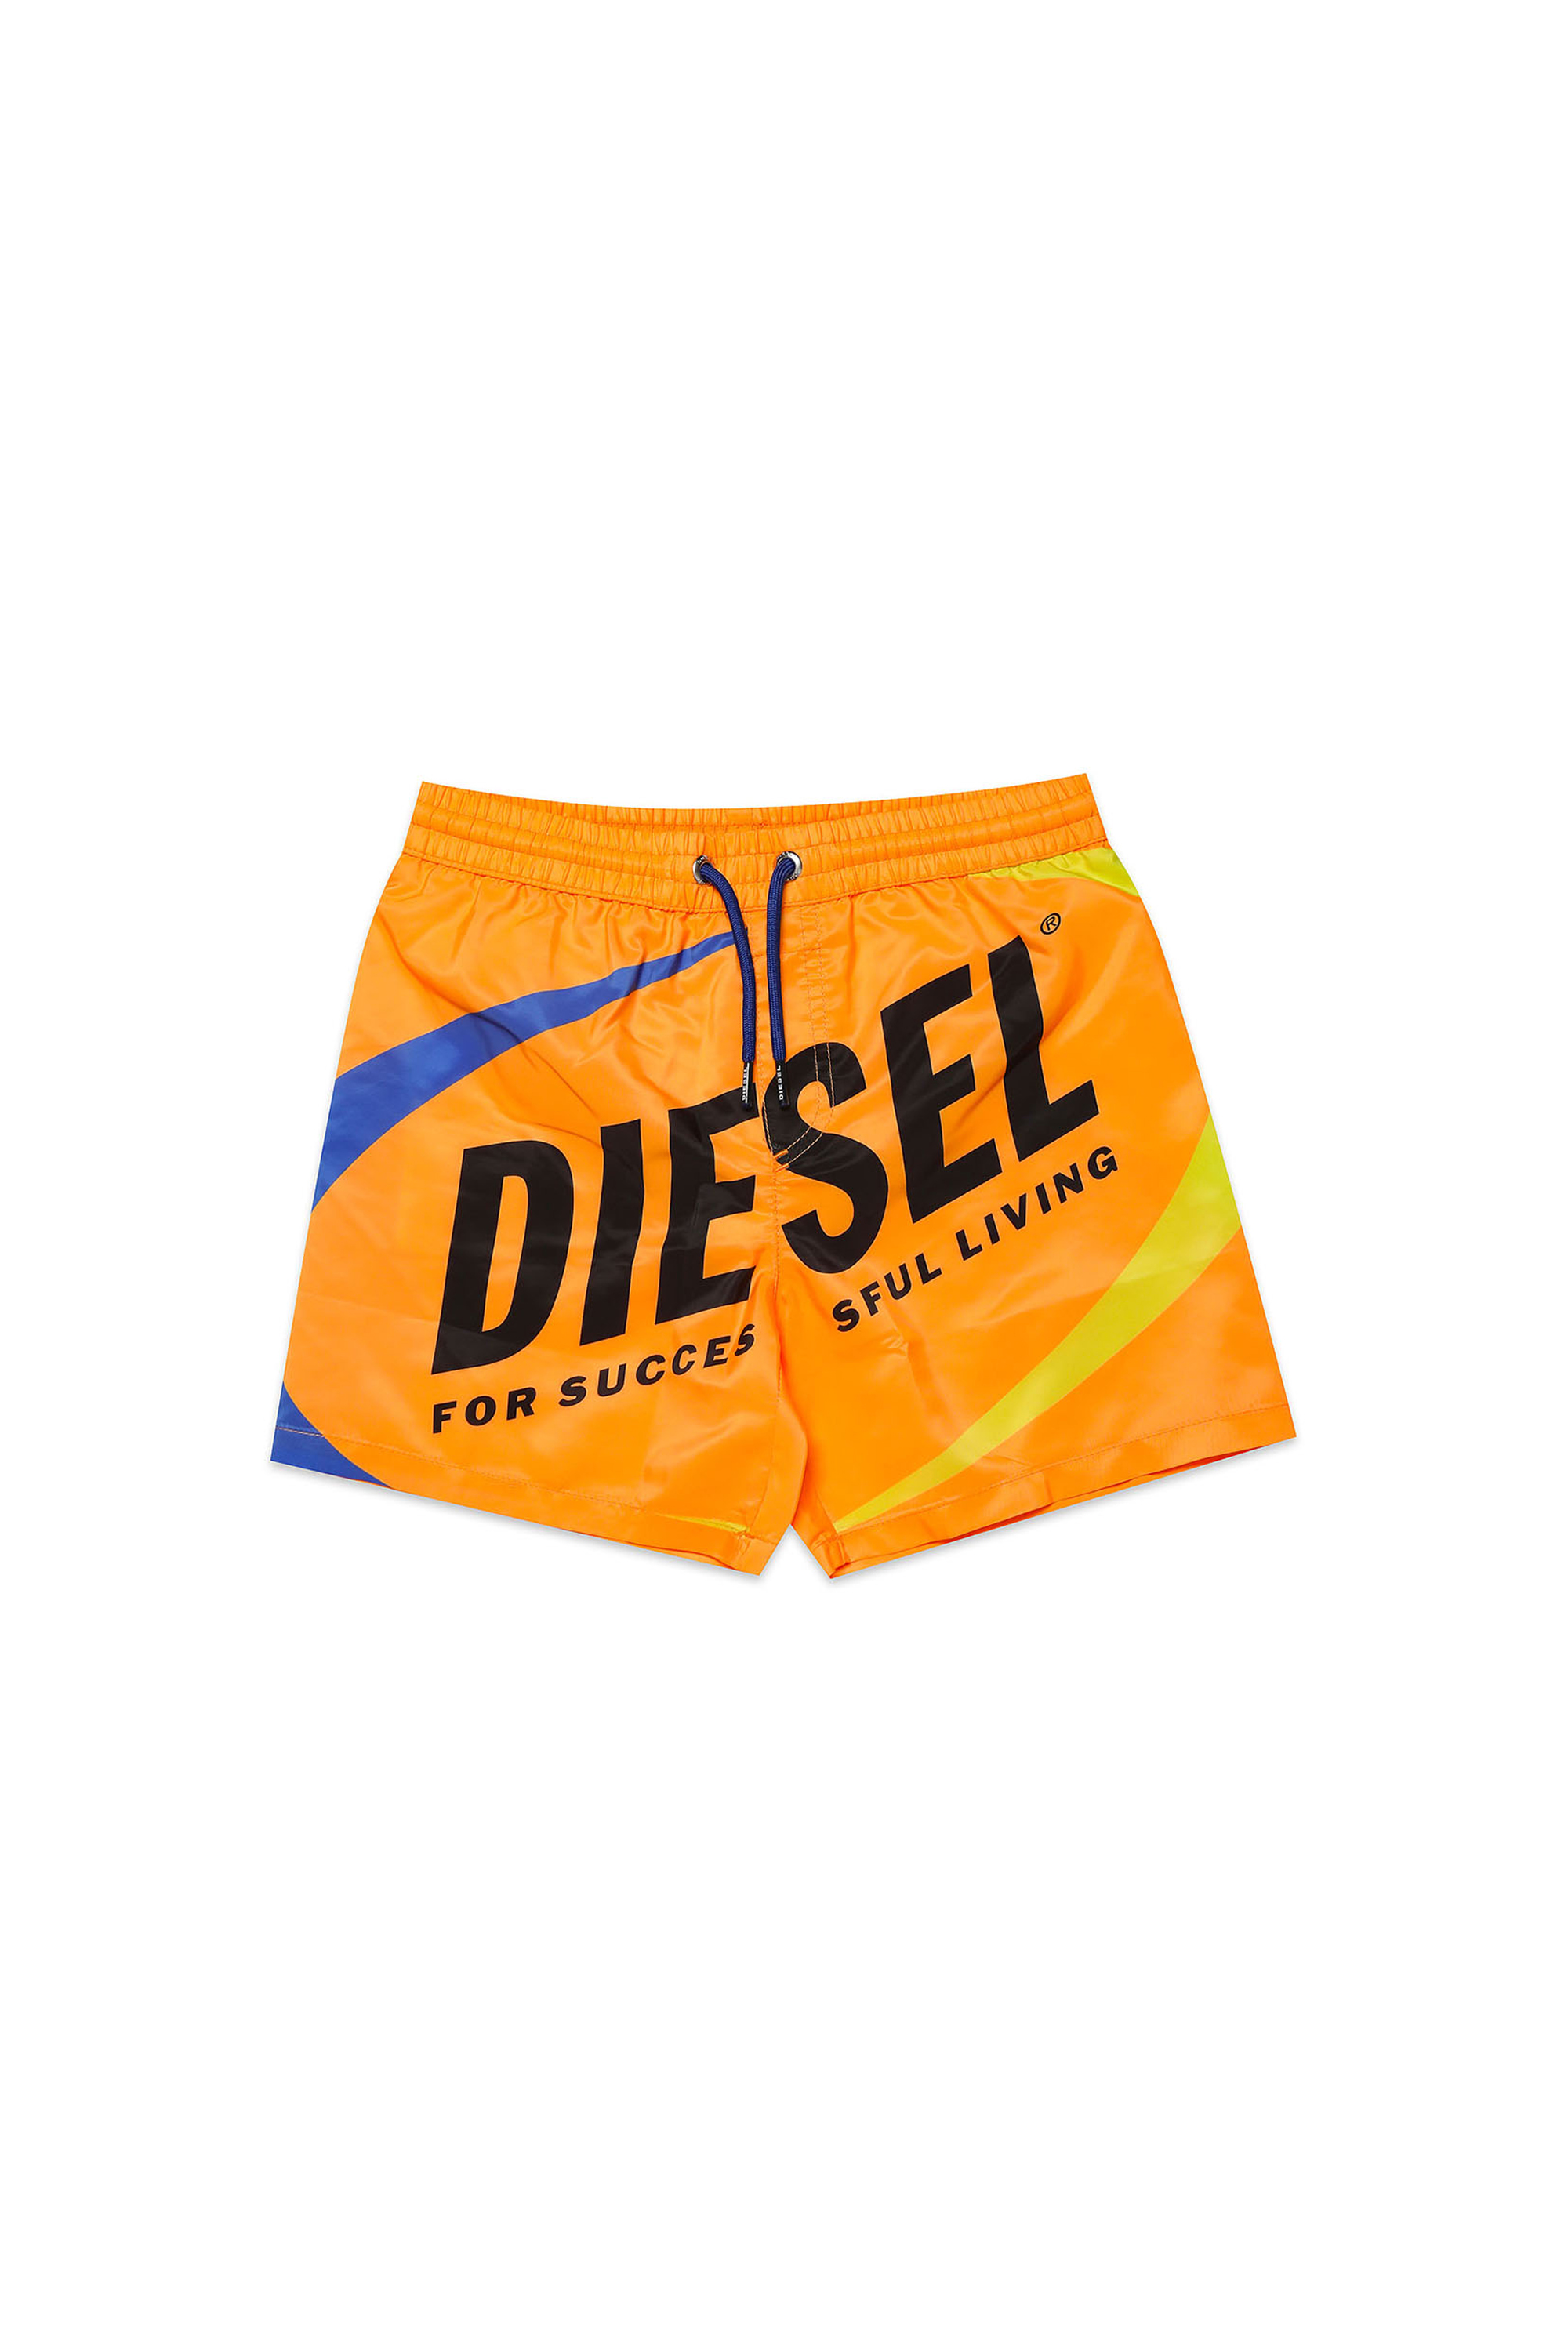 Diesel - MOLOD, Orange - Image 1